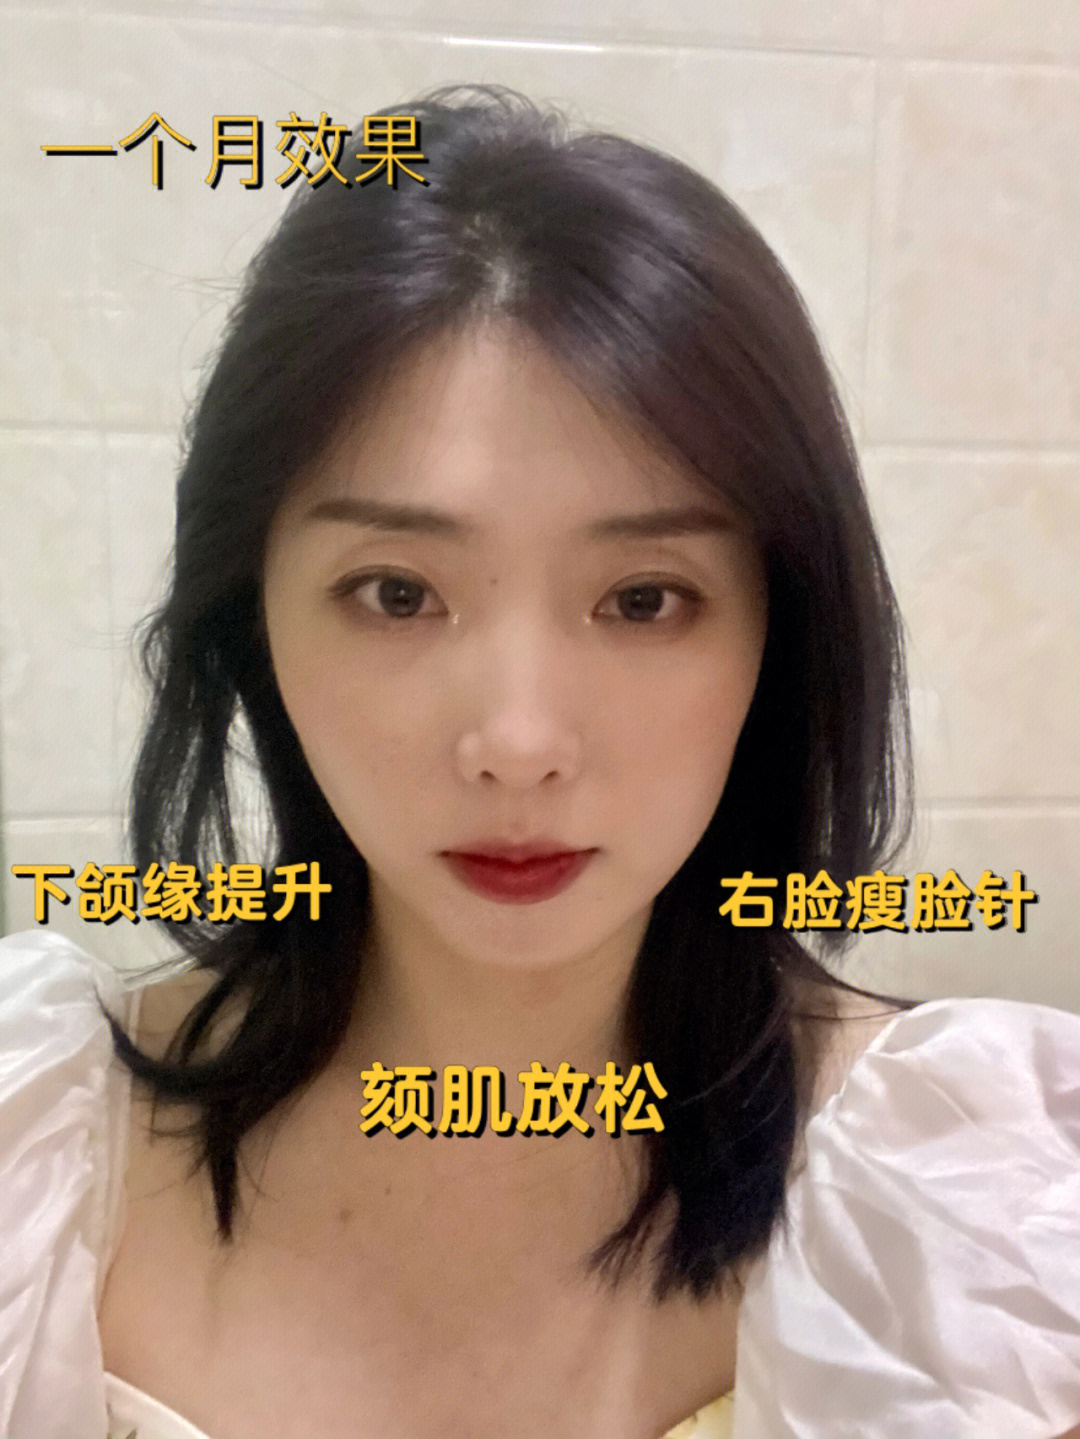 一个月:上海九院瘦脸针&下颌缘提升术后反馈